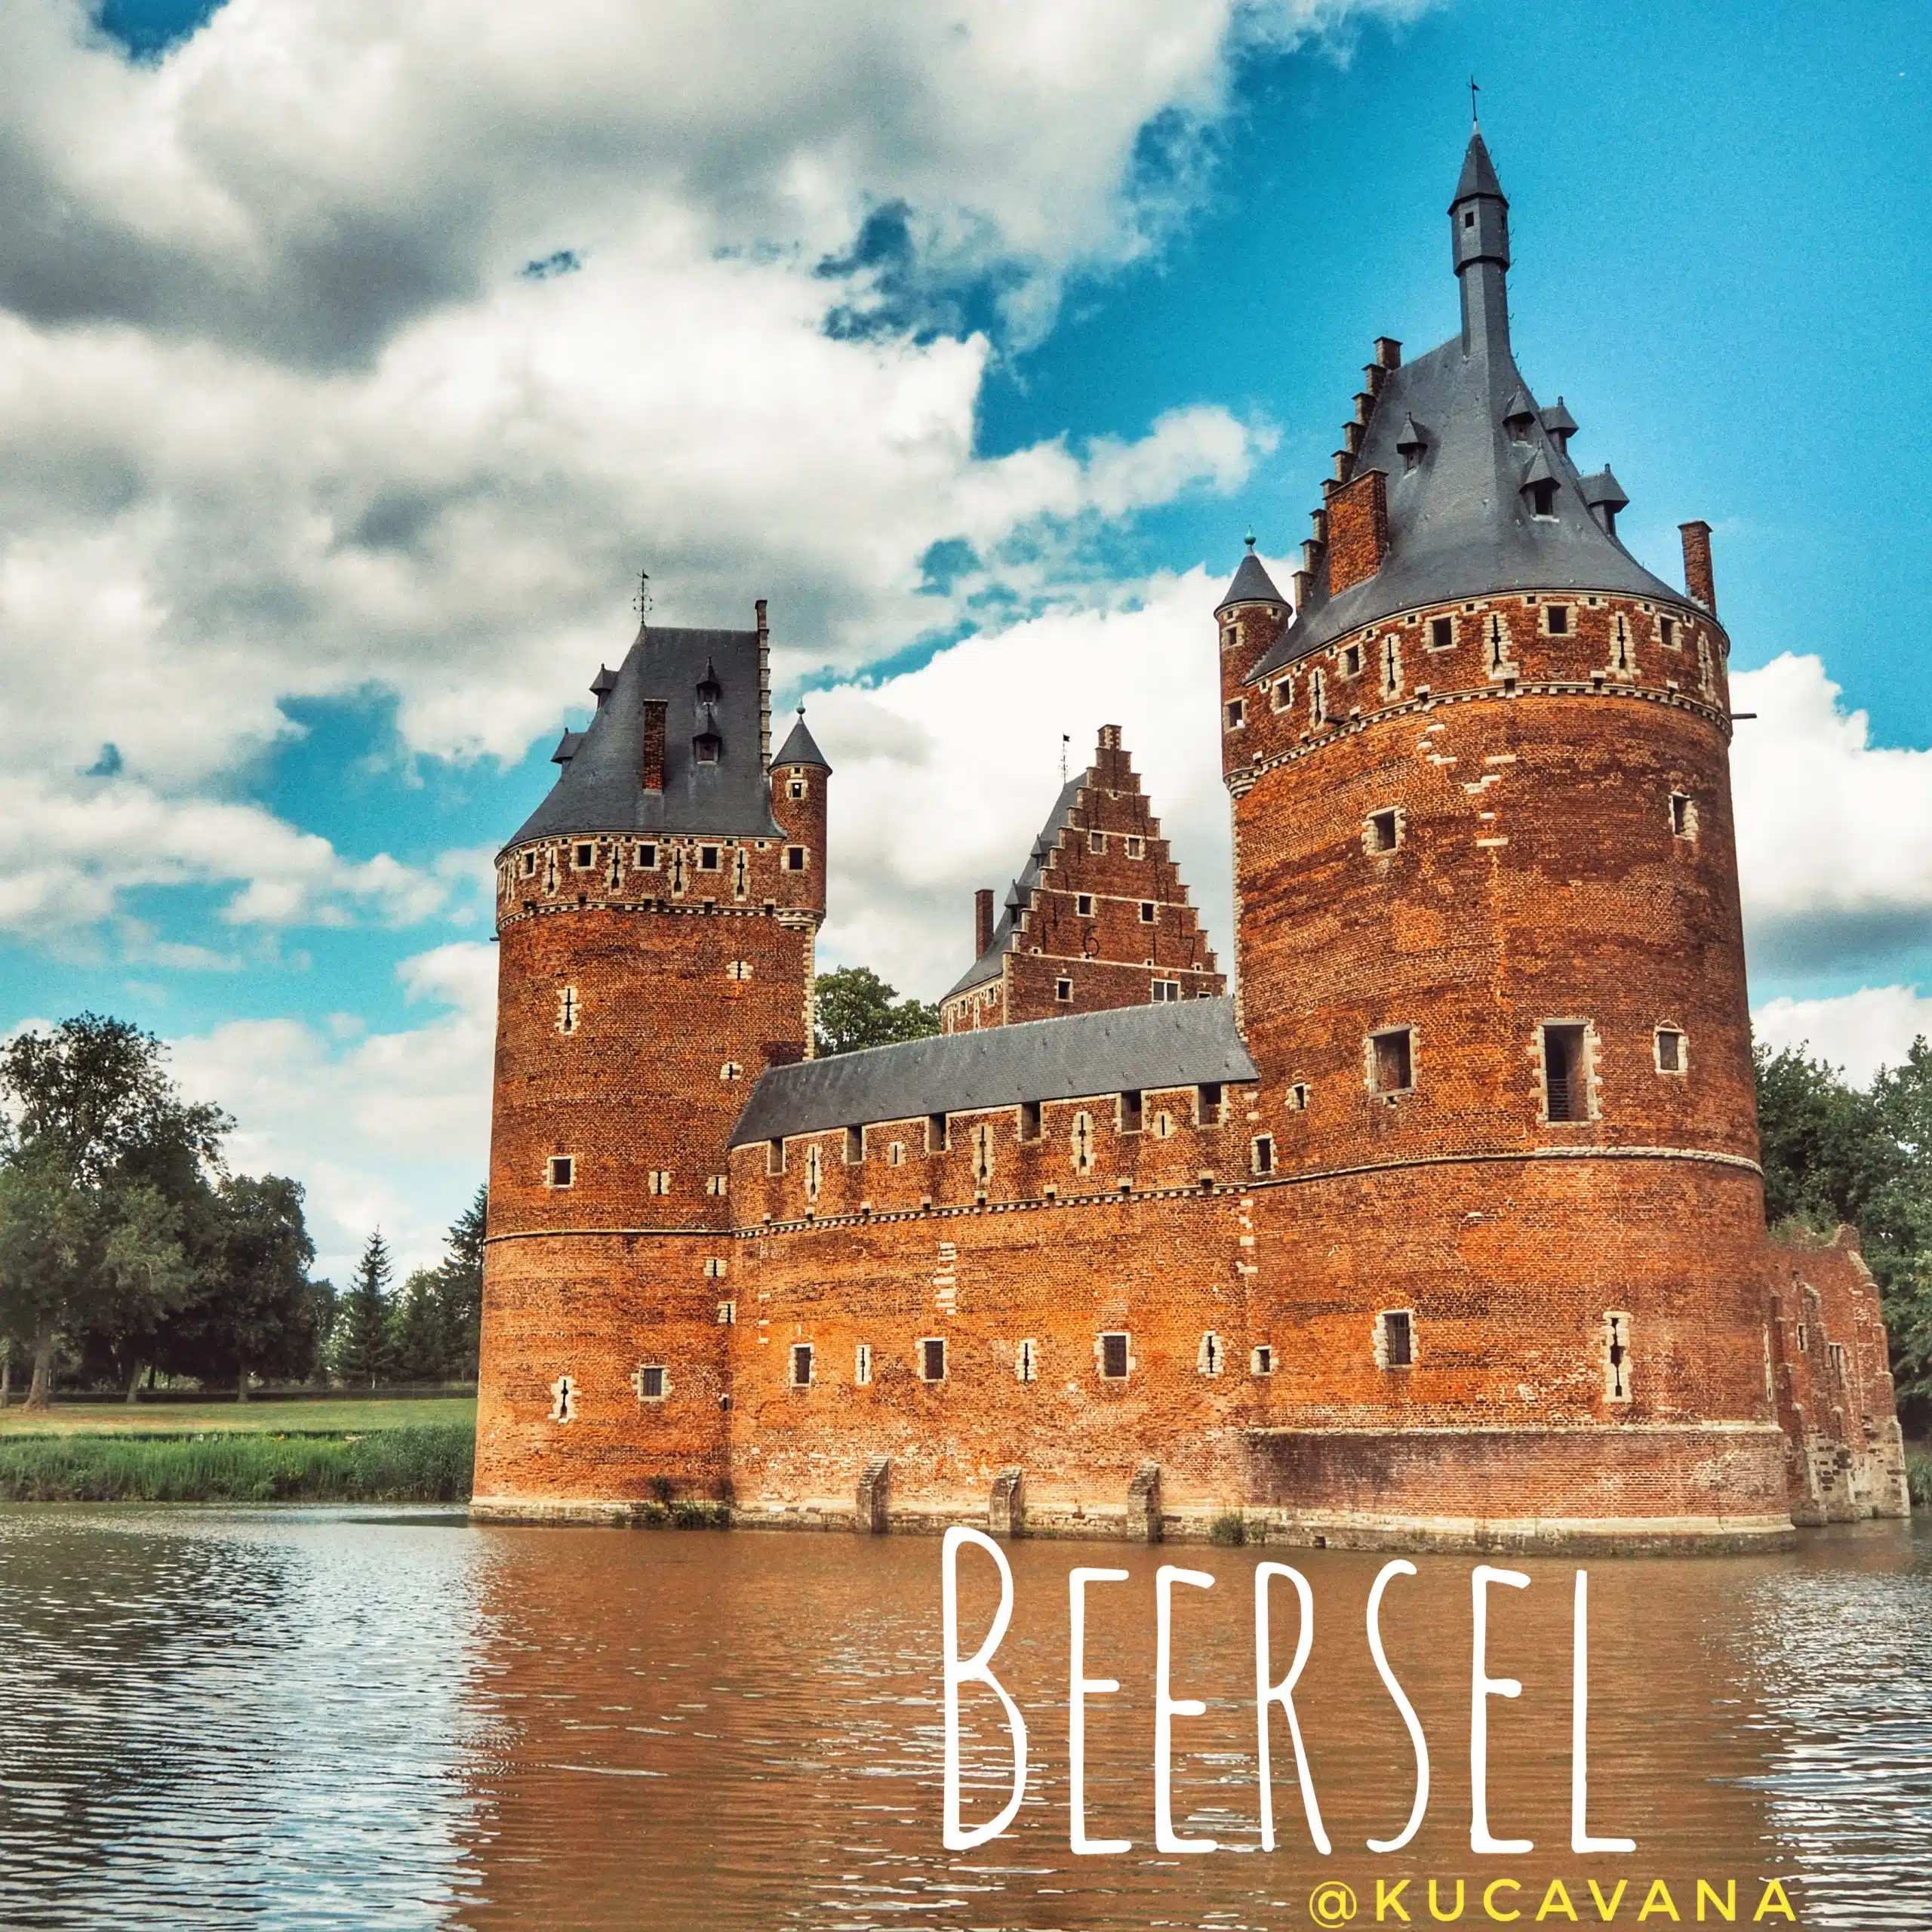 Beersel castells belgica